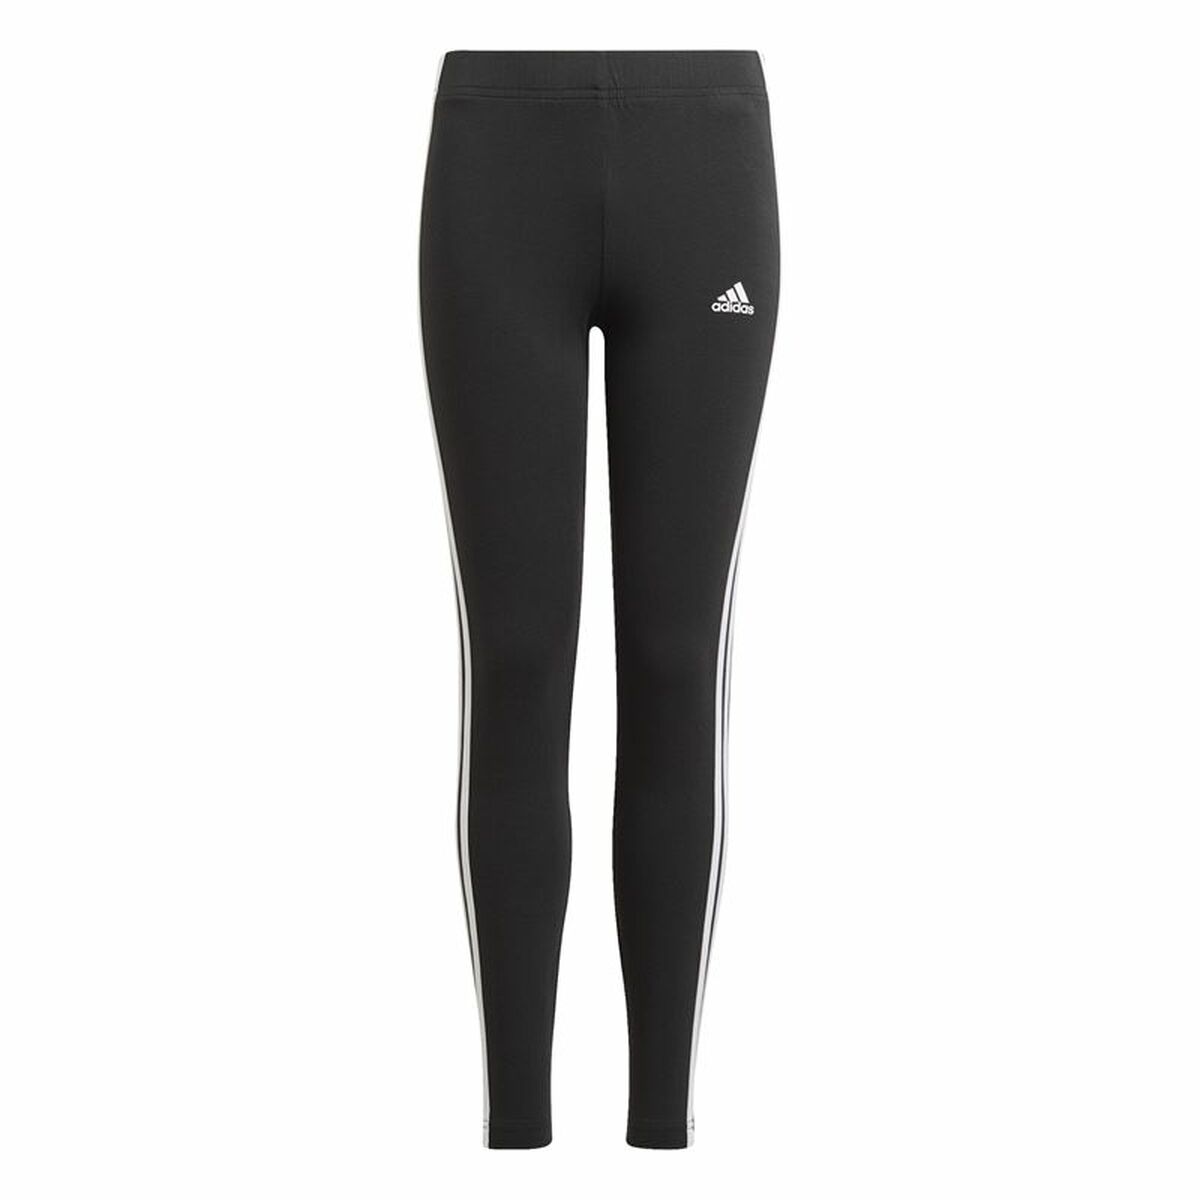 Colanți Sport Adidas Essentials 3 Stripes Negru - Mărime 7-8 Ani